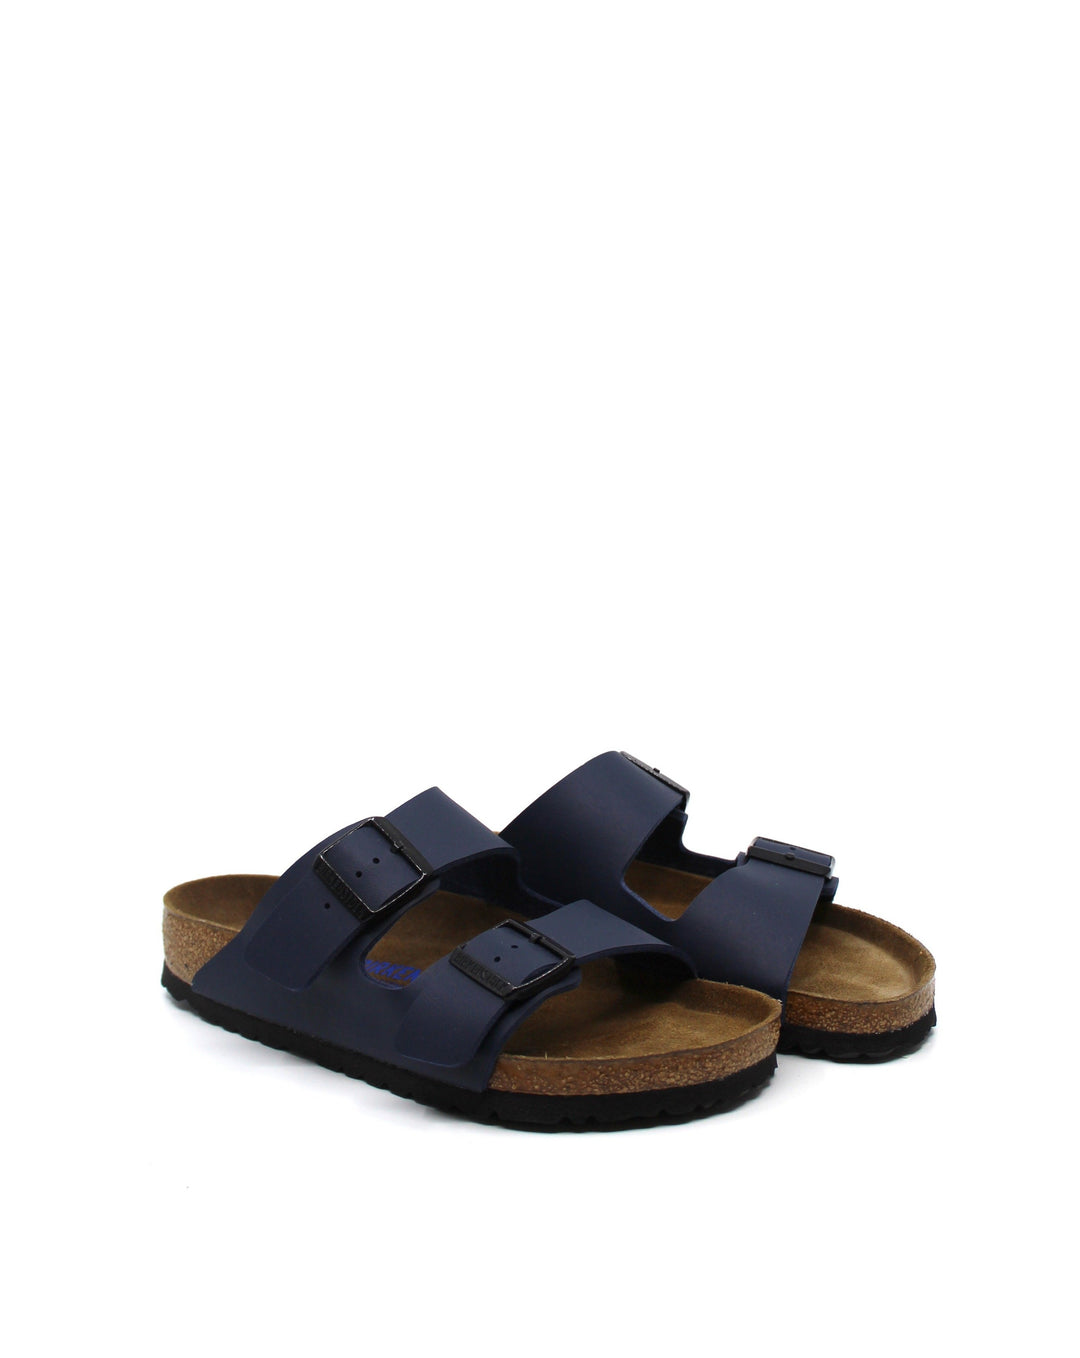 Birkenstock Women's 'Arizona Bs' Slides - Brown - Flat Sandals